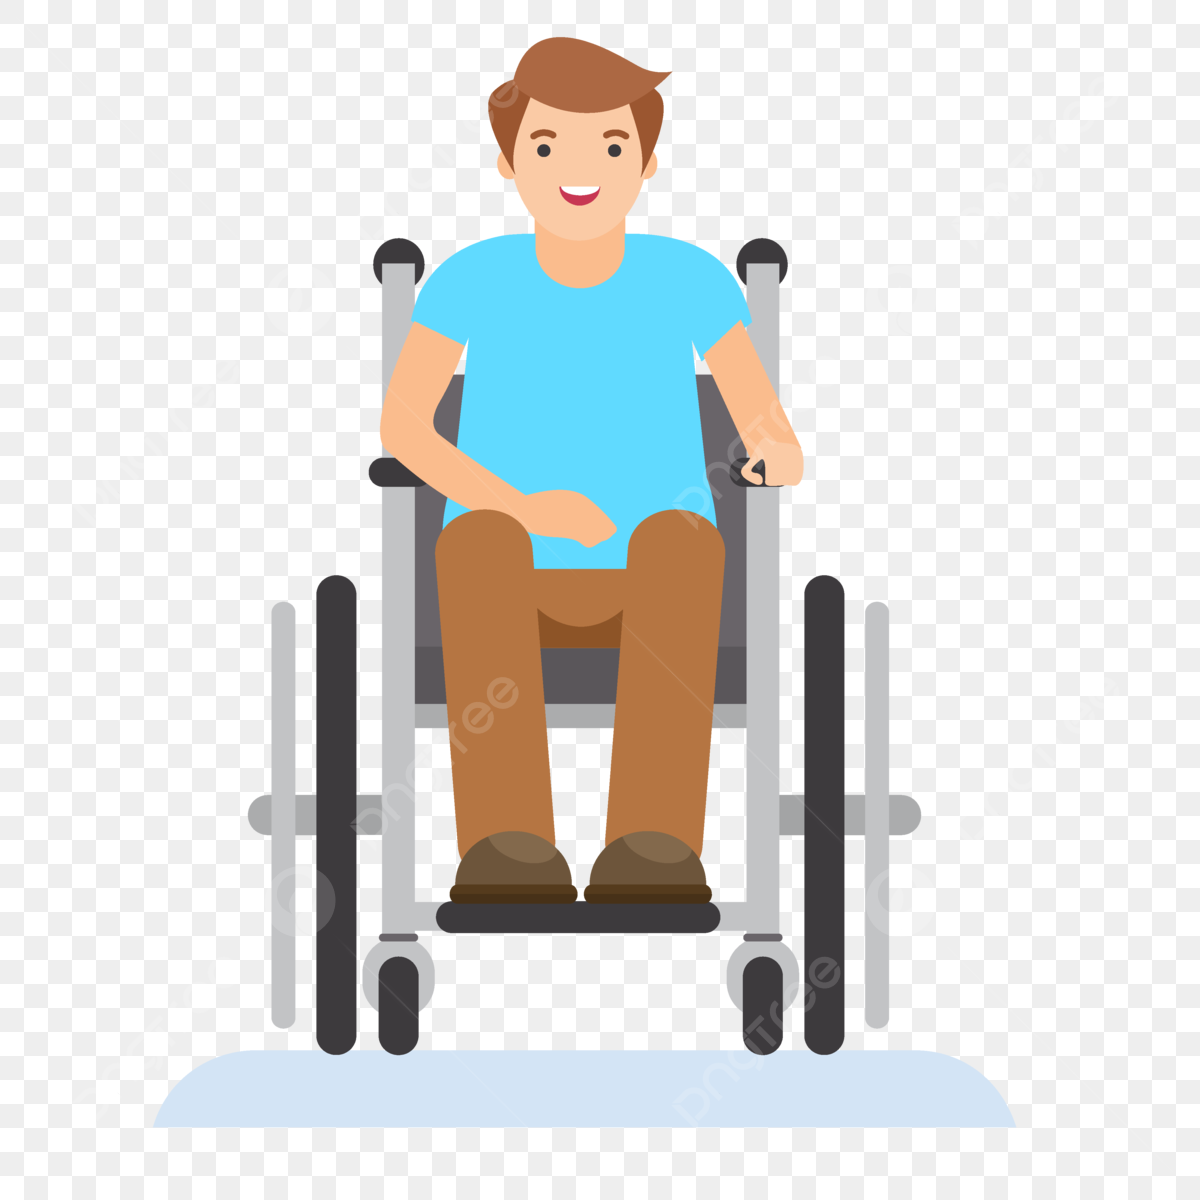 pngtree set telesne postihnutej osoby na invalidnom vozíku png image 7712062 - Tajomstvá výkladu snov